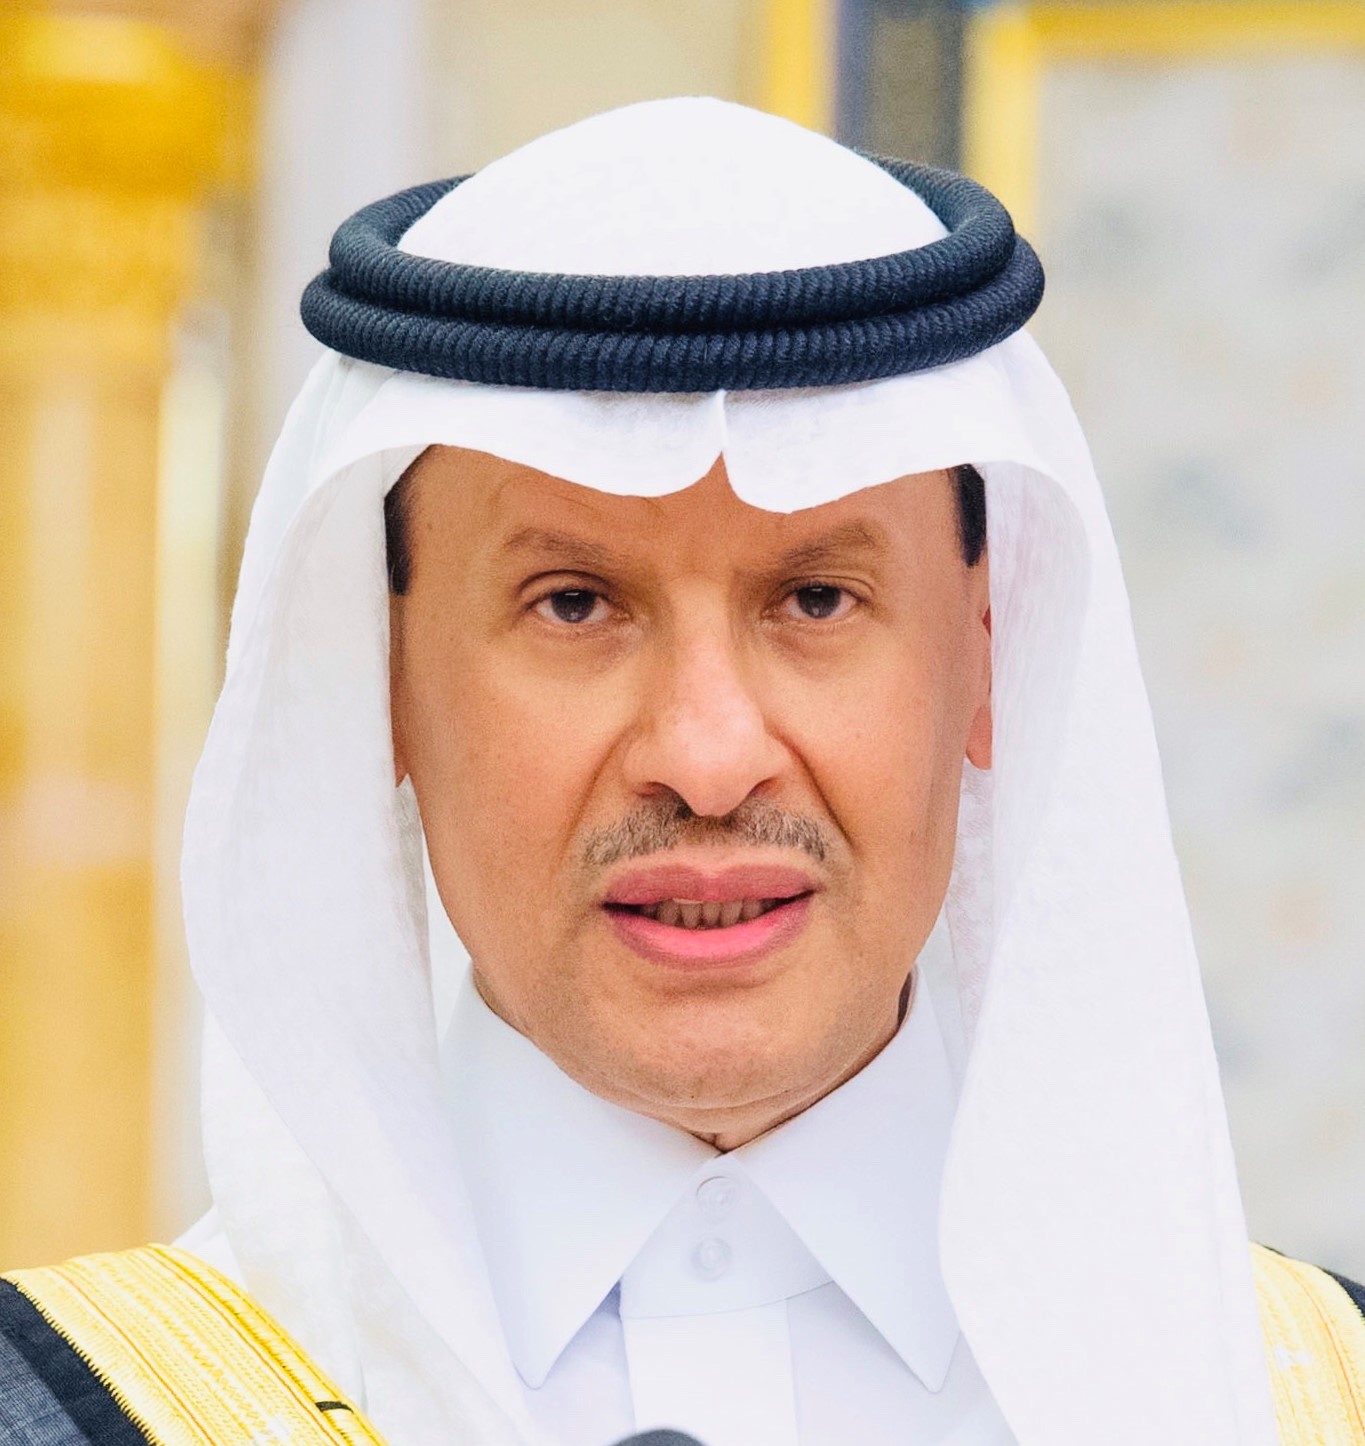 صاحب السمو الملكي الأمير عبدالعزيز بن سلمان بن عبدالعزيز